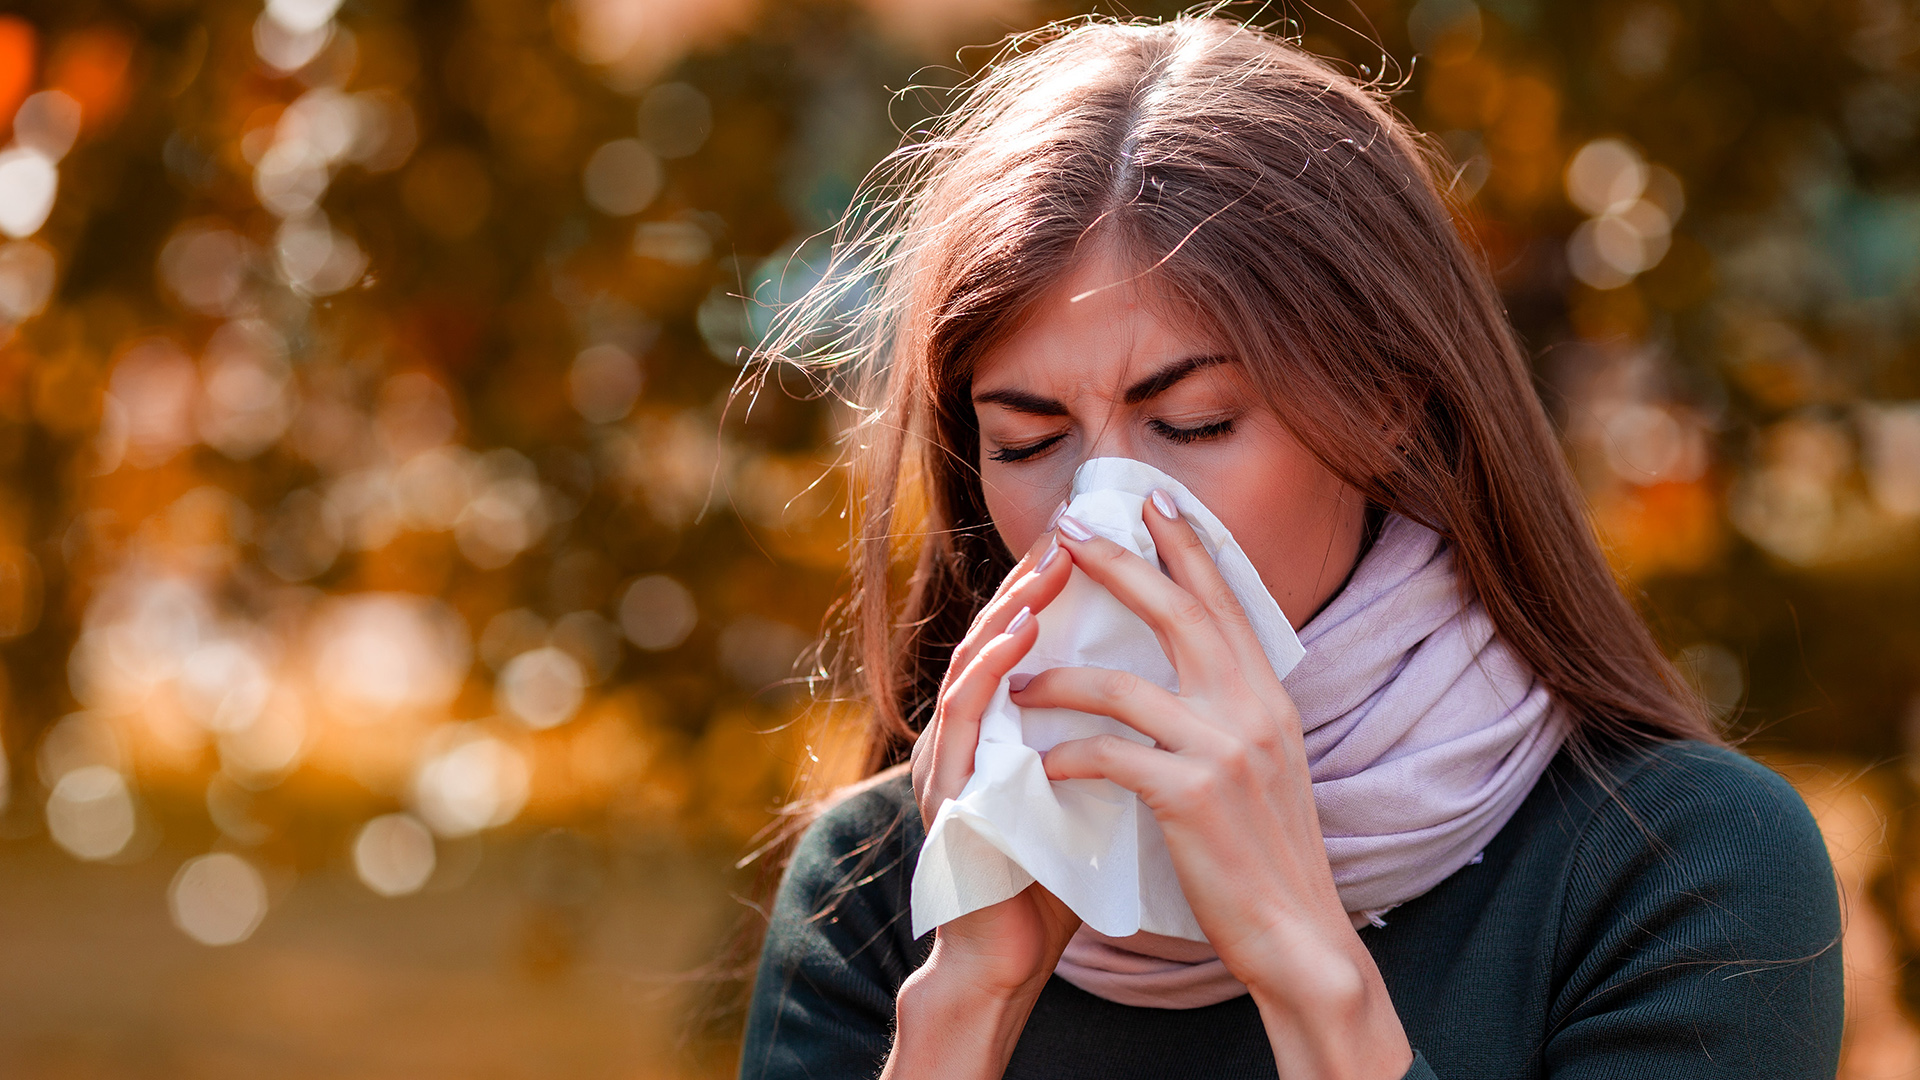 Entre el 70% y 90% de los pacientes el asma responde a causas alergénicas (Shutterstock)